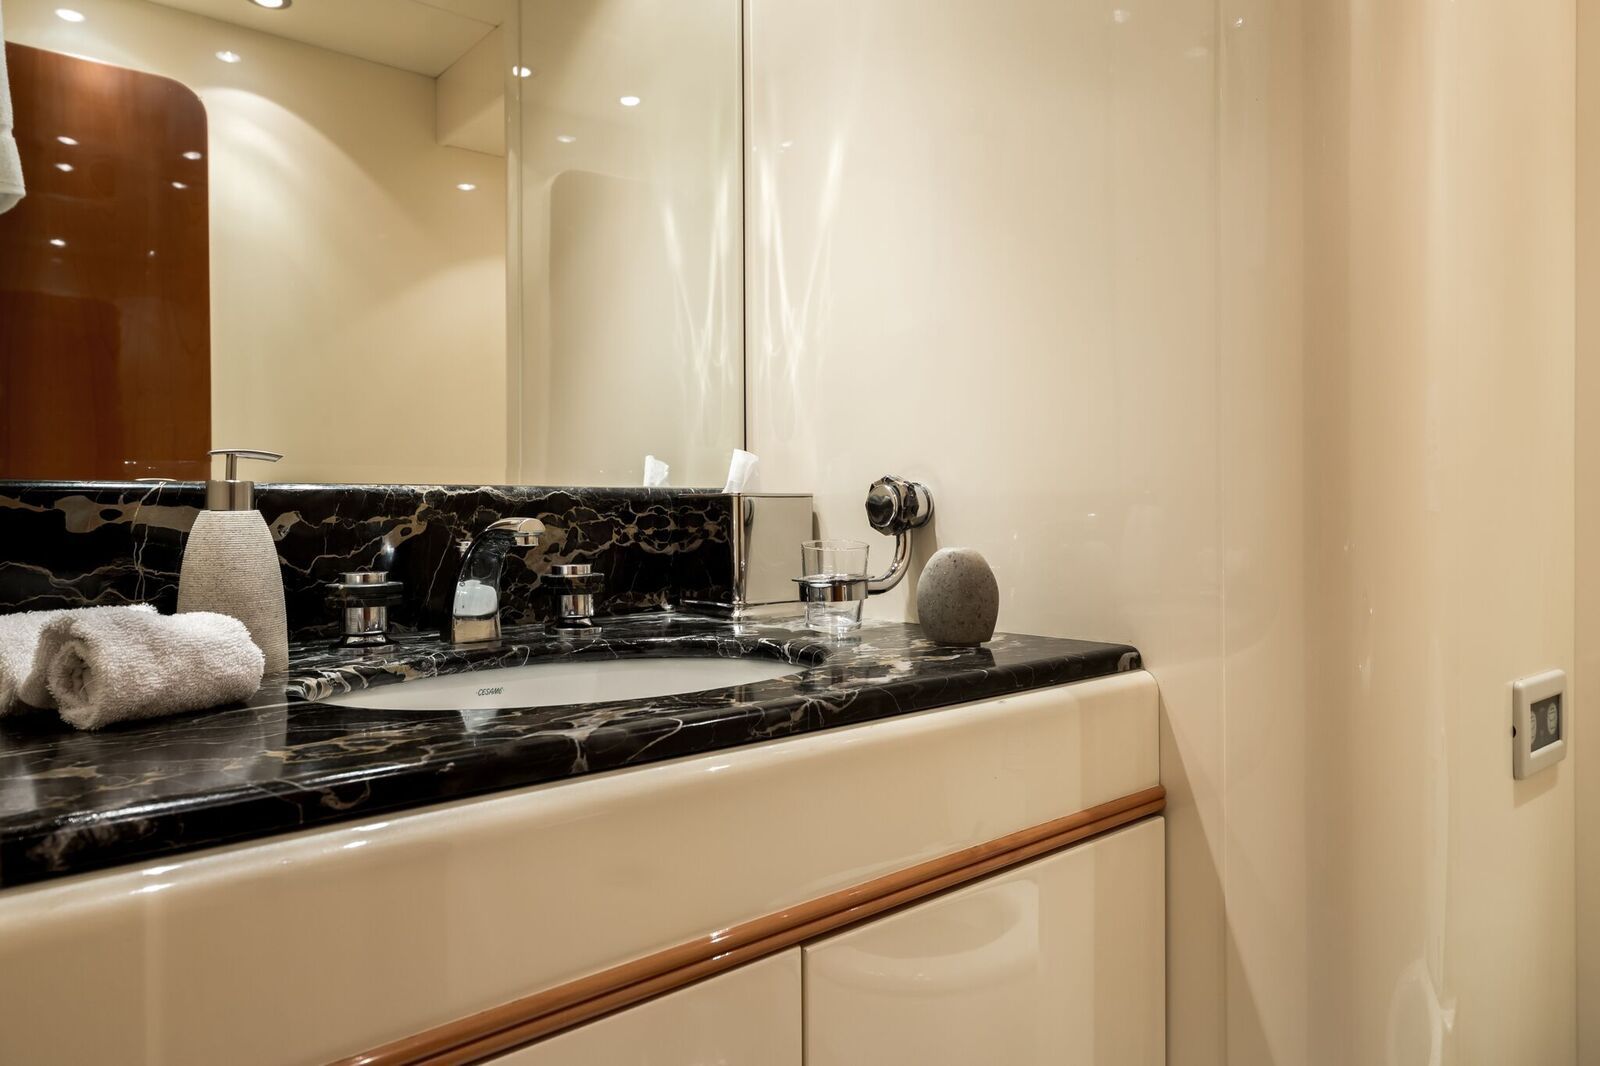 INDULGENCE OF POOLE Mangusta 86 Luxury Superyacht Main Bathroom